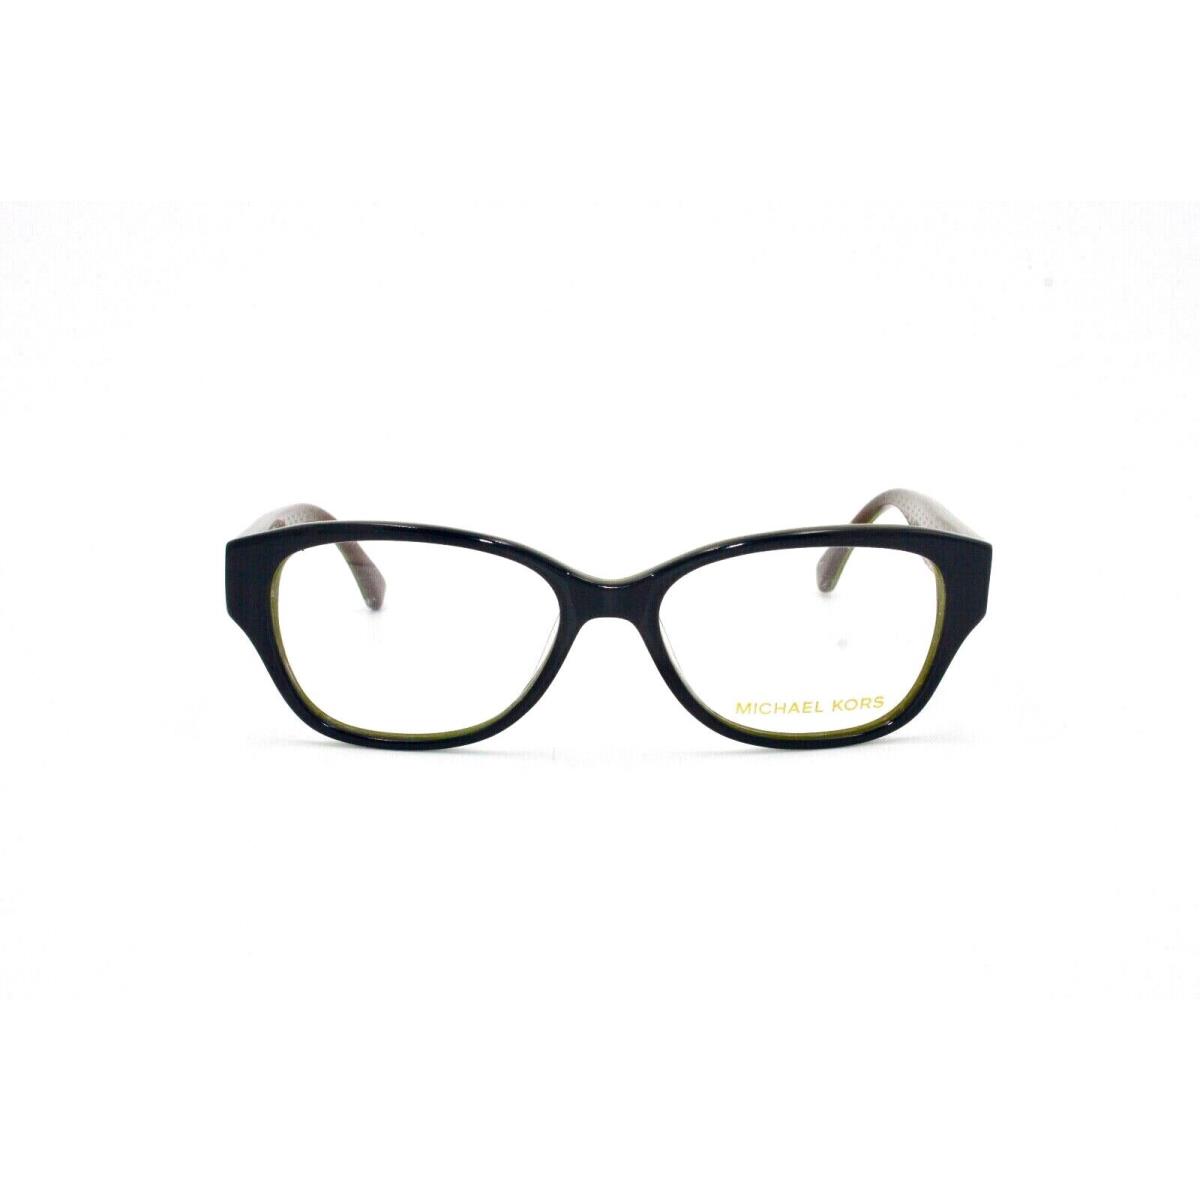 Michael Kore Eyewear Frame MK865 414 50 16 135